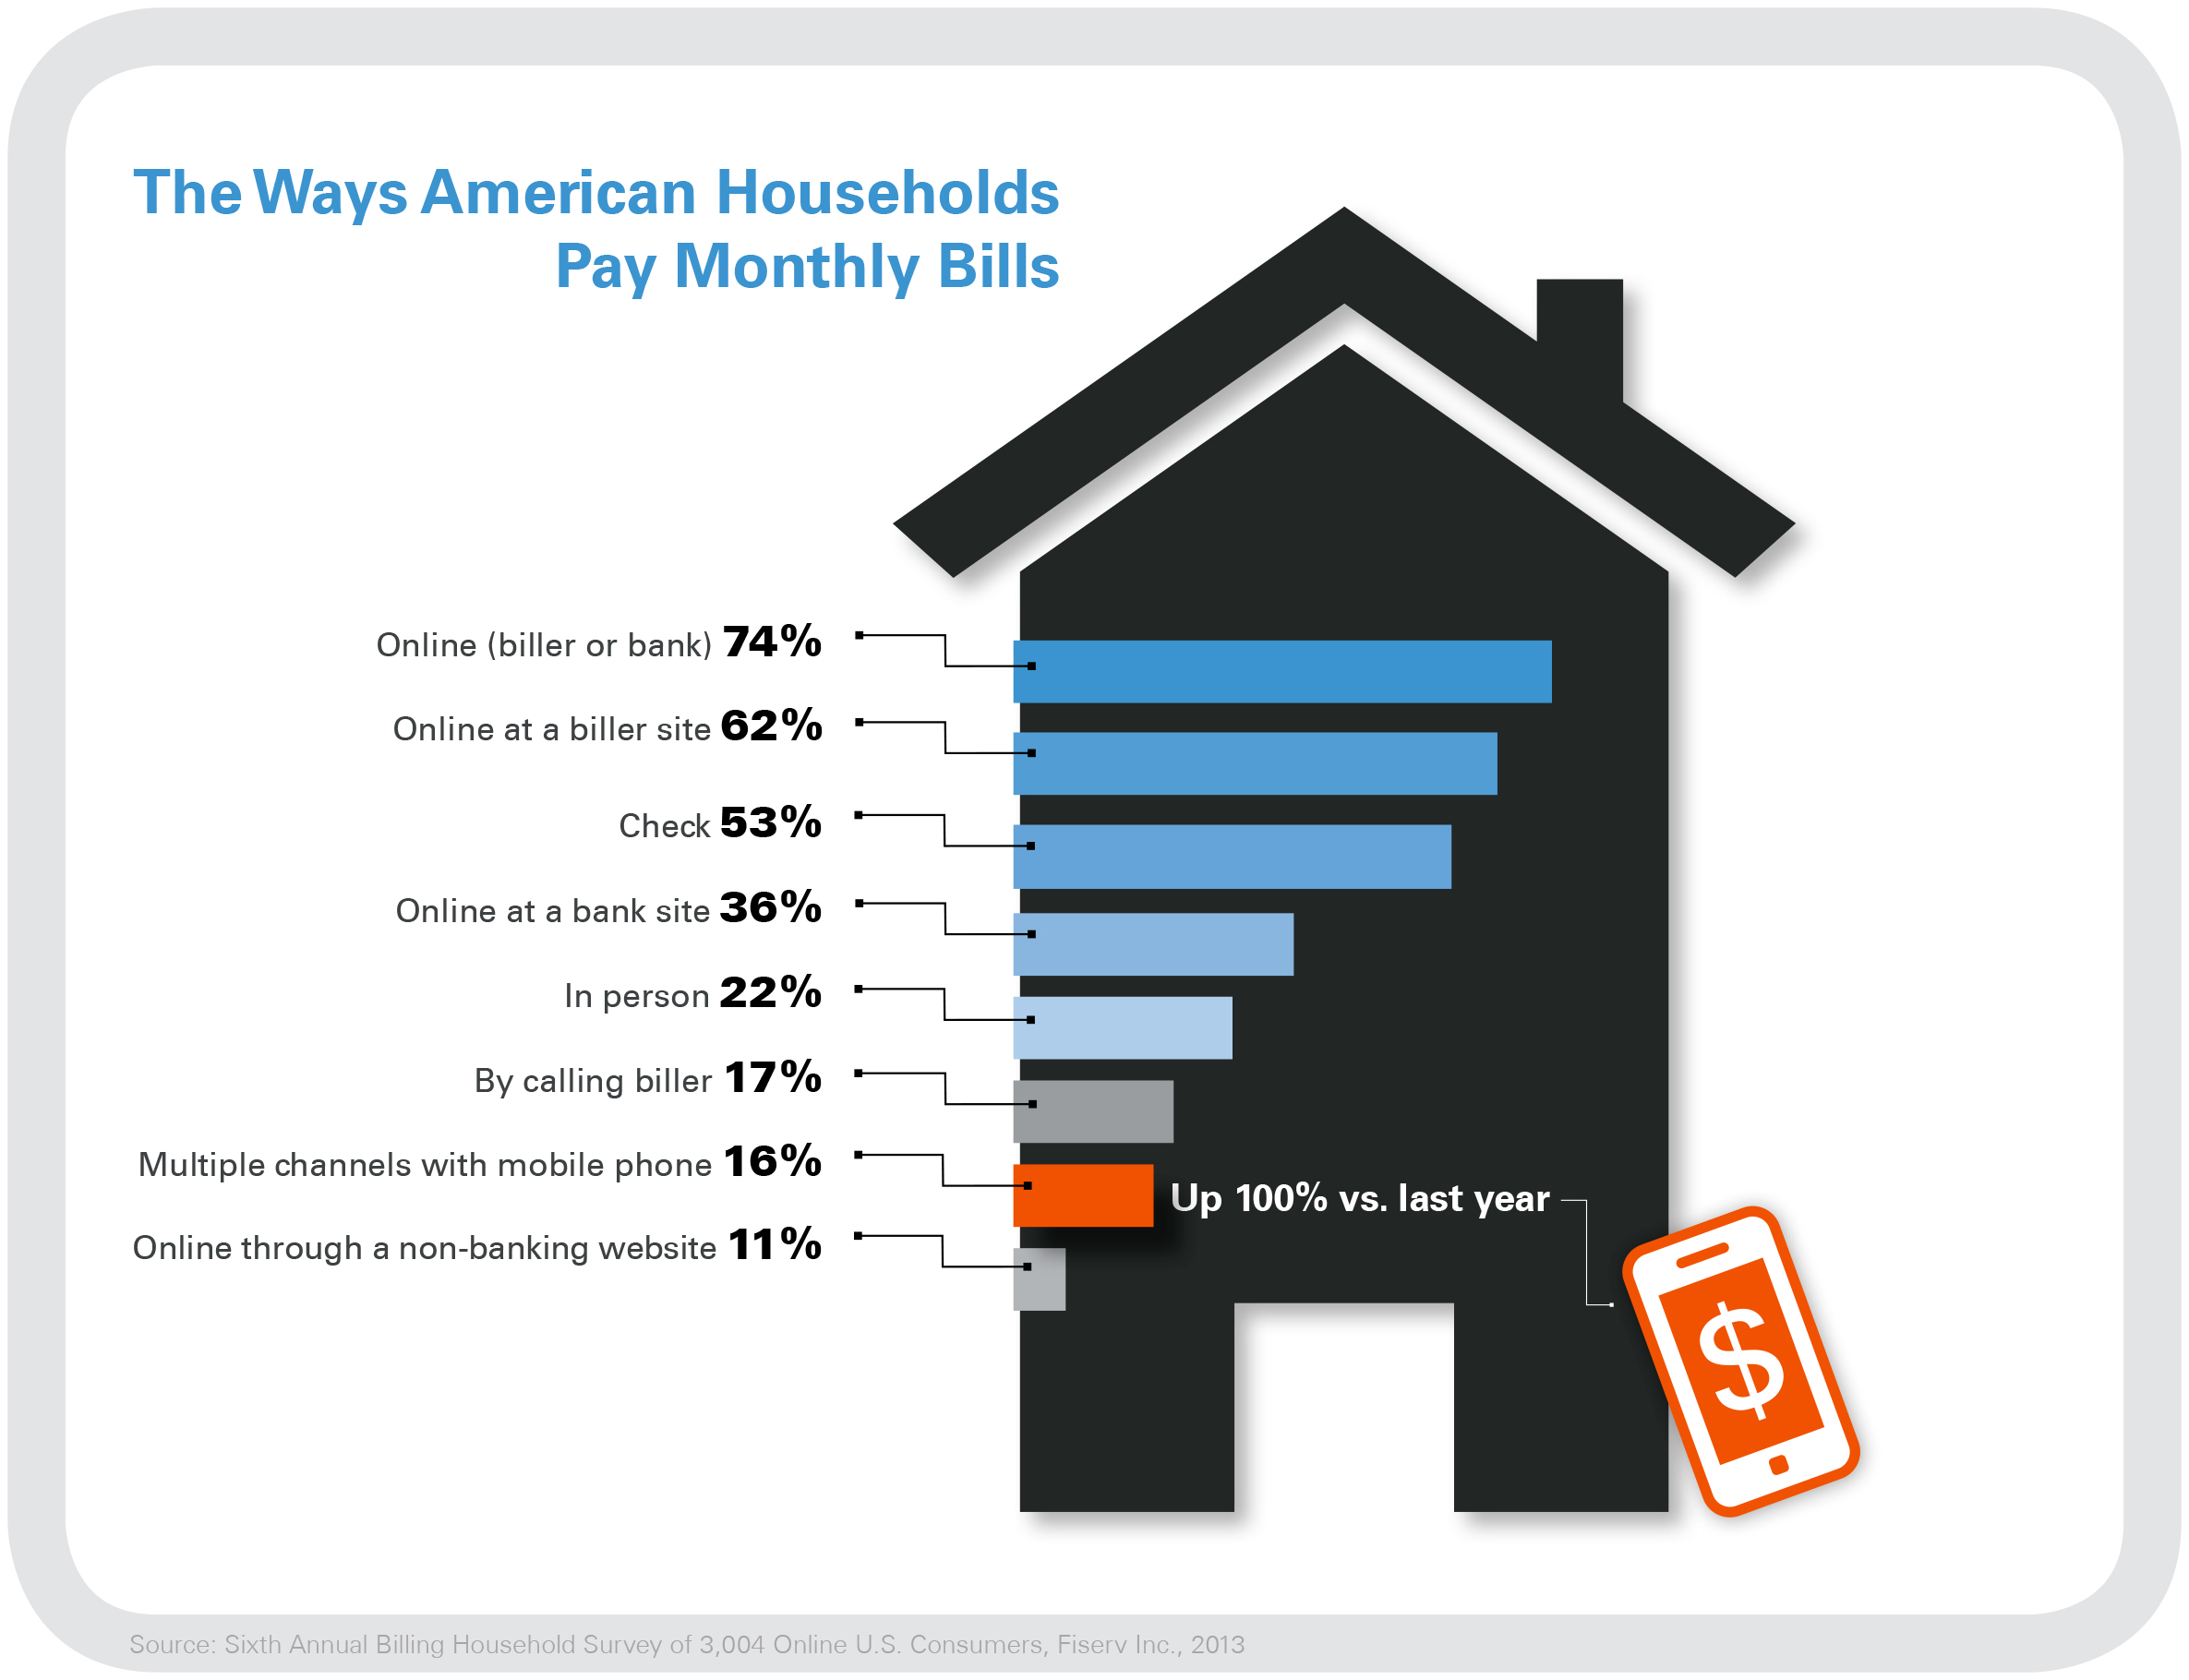 2013 Fiserv Billing Household Survey